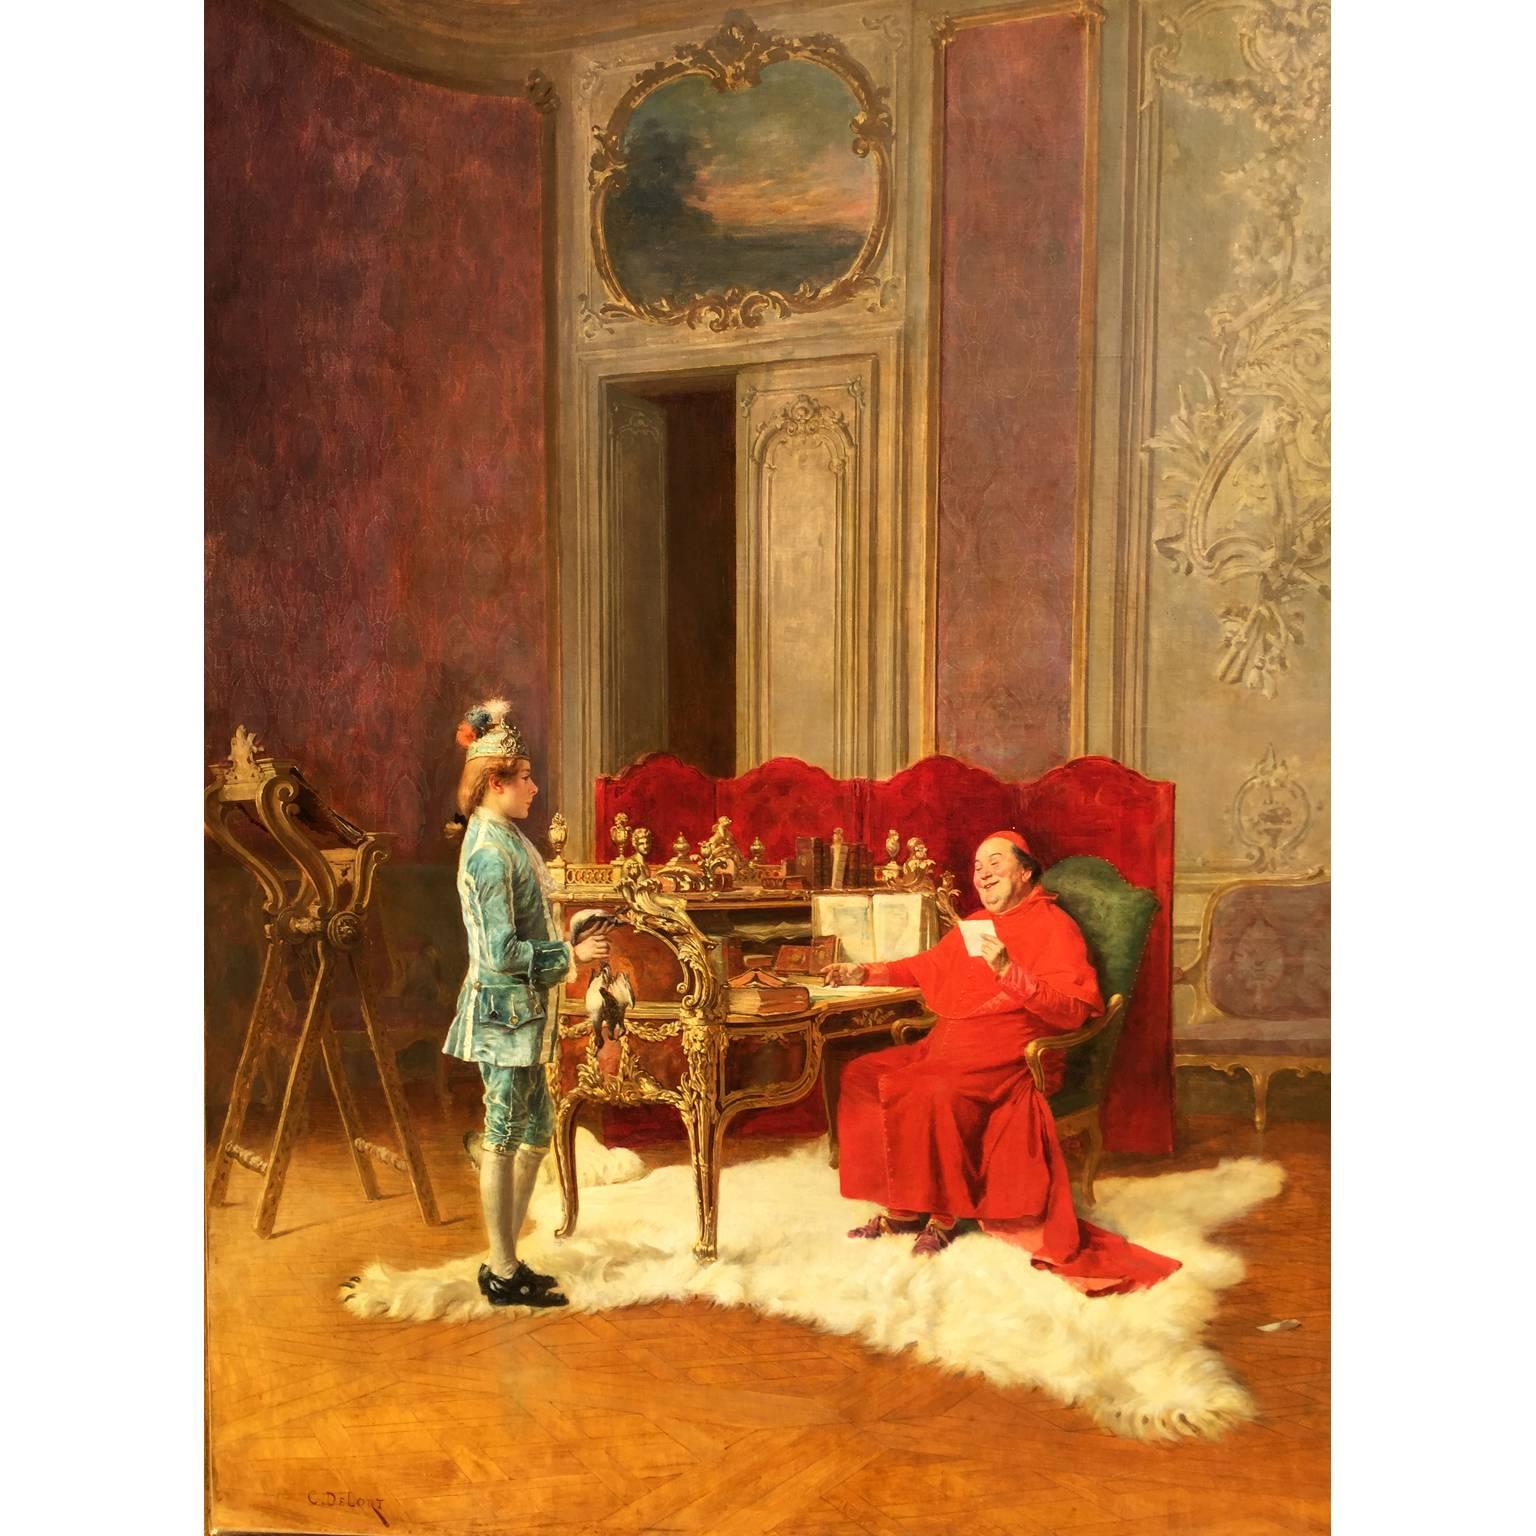 Charles Edouard Edmond Delort (français, 1841-1895) huile sur toile 